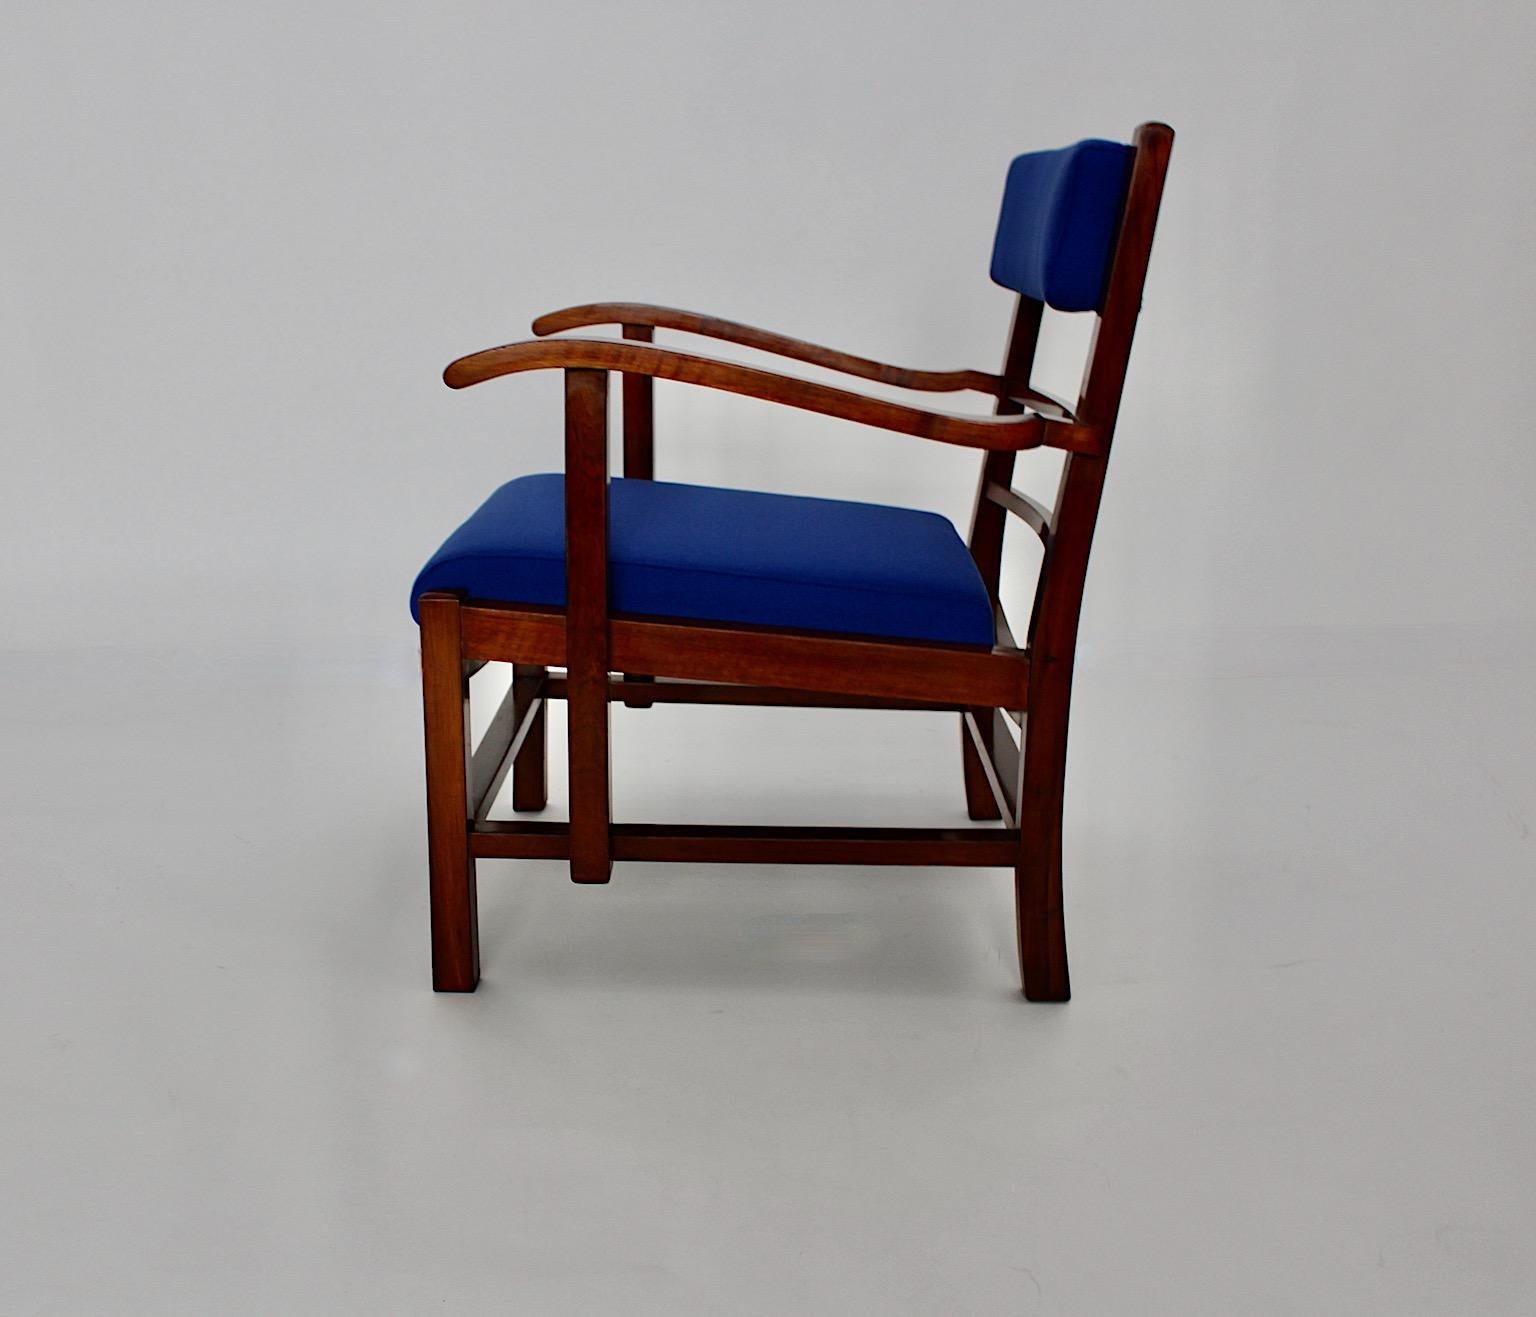 Art Deco Vintage Sessel oder Lounge Chair aus Nussbaum und elektrisch blauem Textilgewebe, entworfen und ausgeführt um 1925 in Wien im Kreis von Fritz Gross.
Während das Gestell aus Nussbaumholz von Hand mit Schellack poliert wurde, sind Sitzfläche